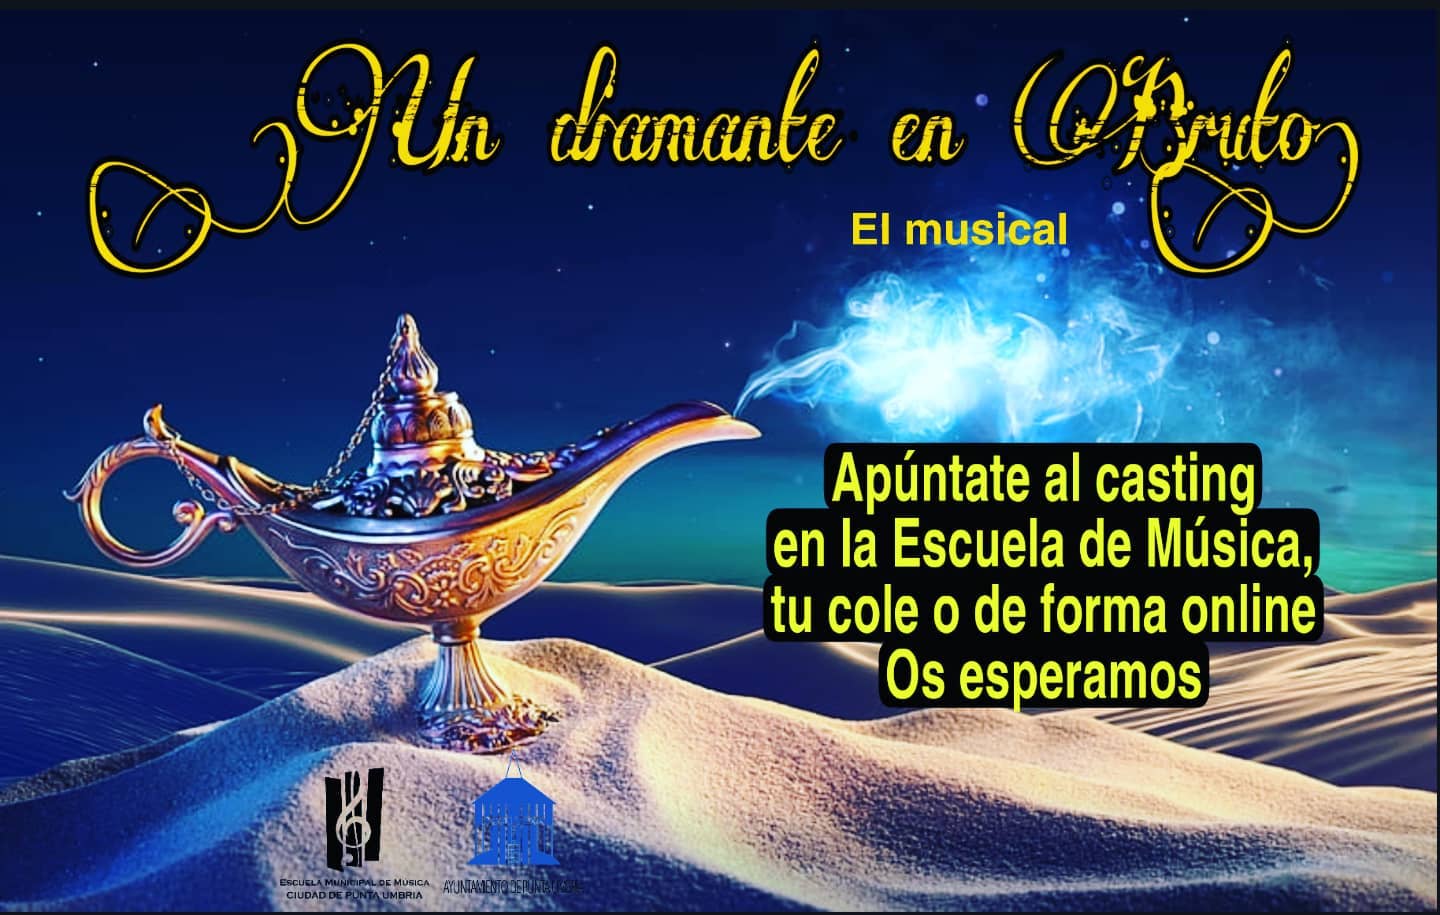 La Escuela Municipal de Música de Punta Umbría convoca un casting para el musical infantil 'Un diamante en bruto'